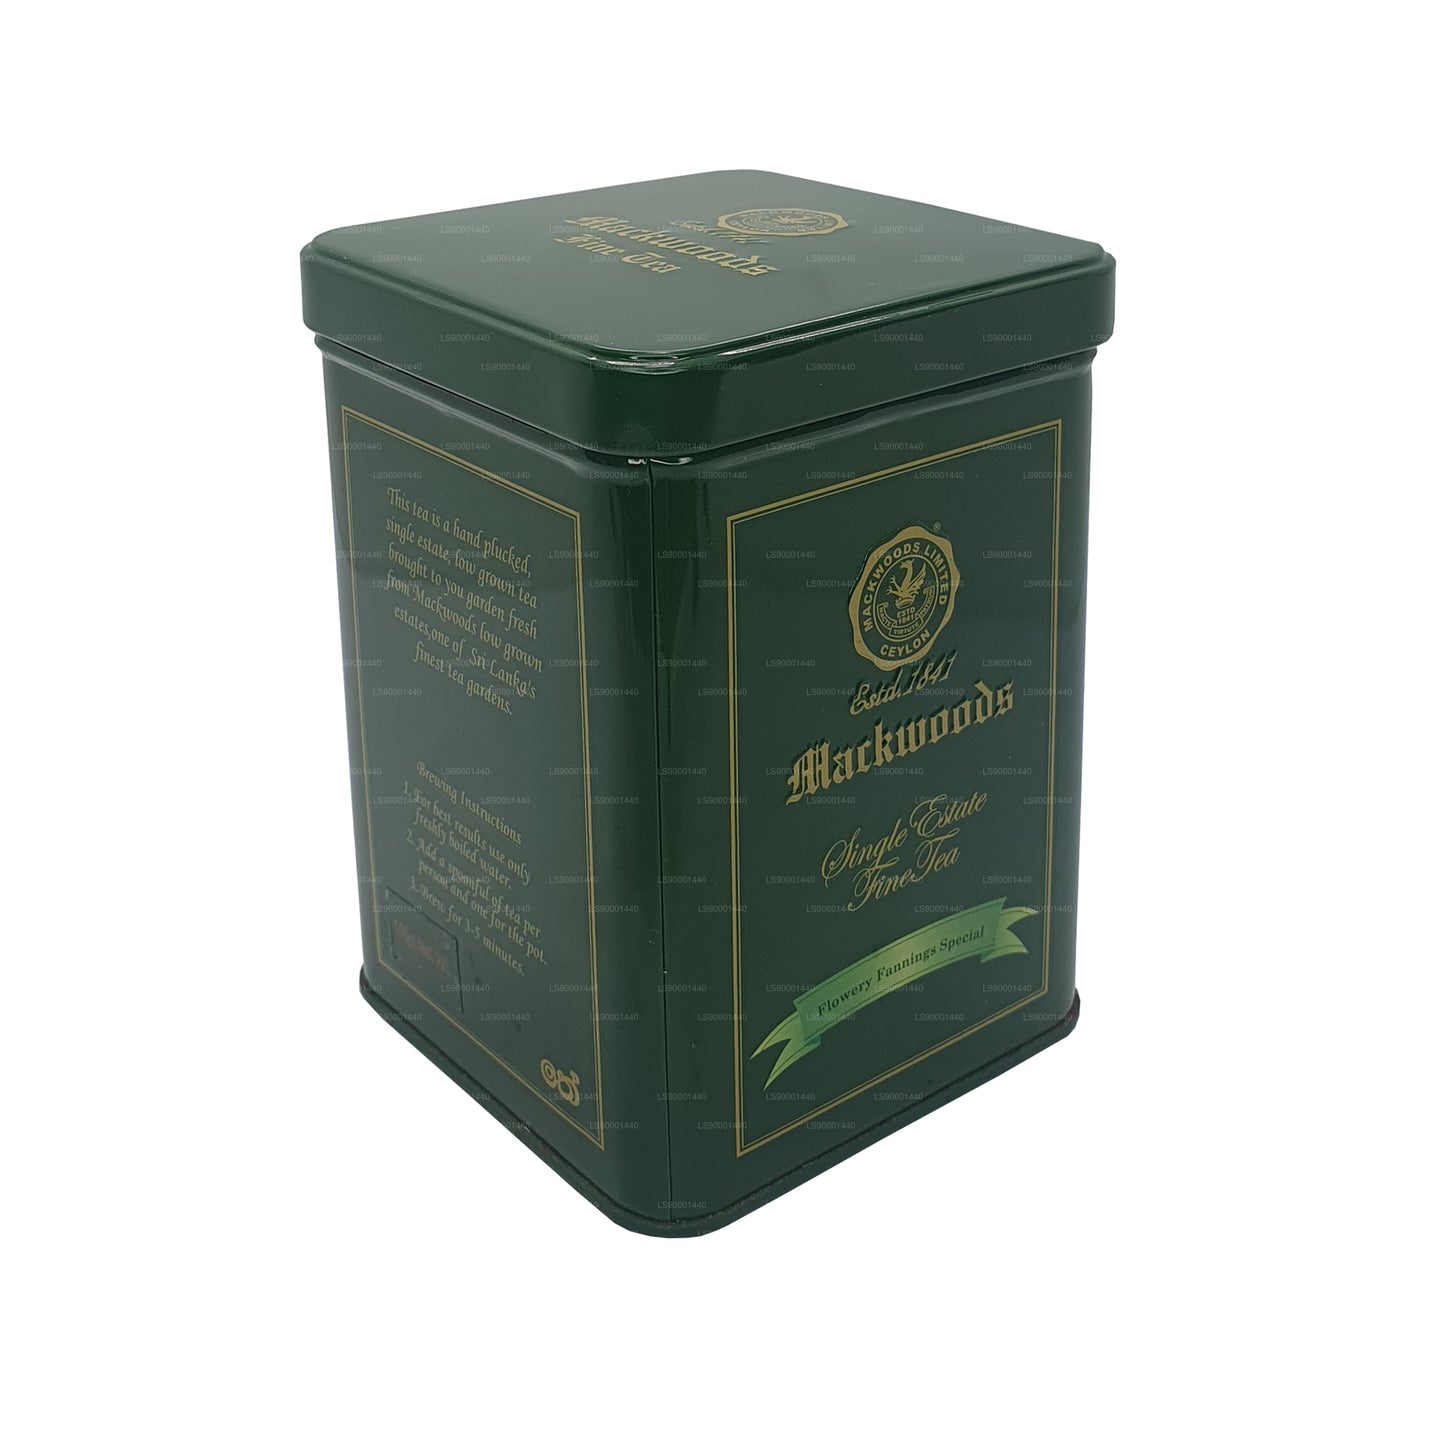 Mackwoods Single Estate Flowery Fannings Special (FFsp) Grade Tea (100g)